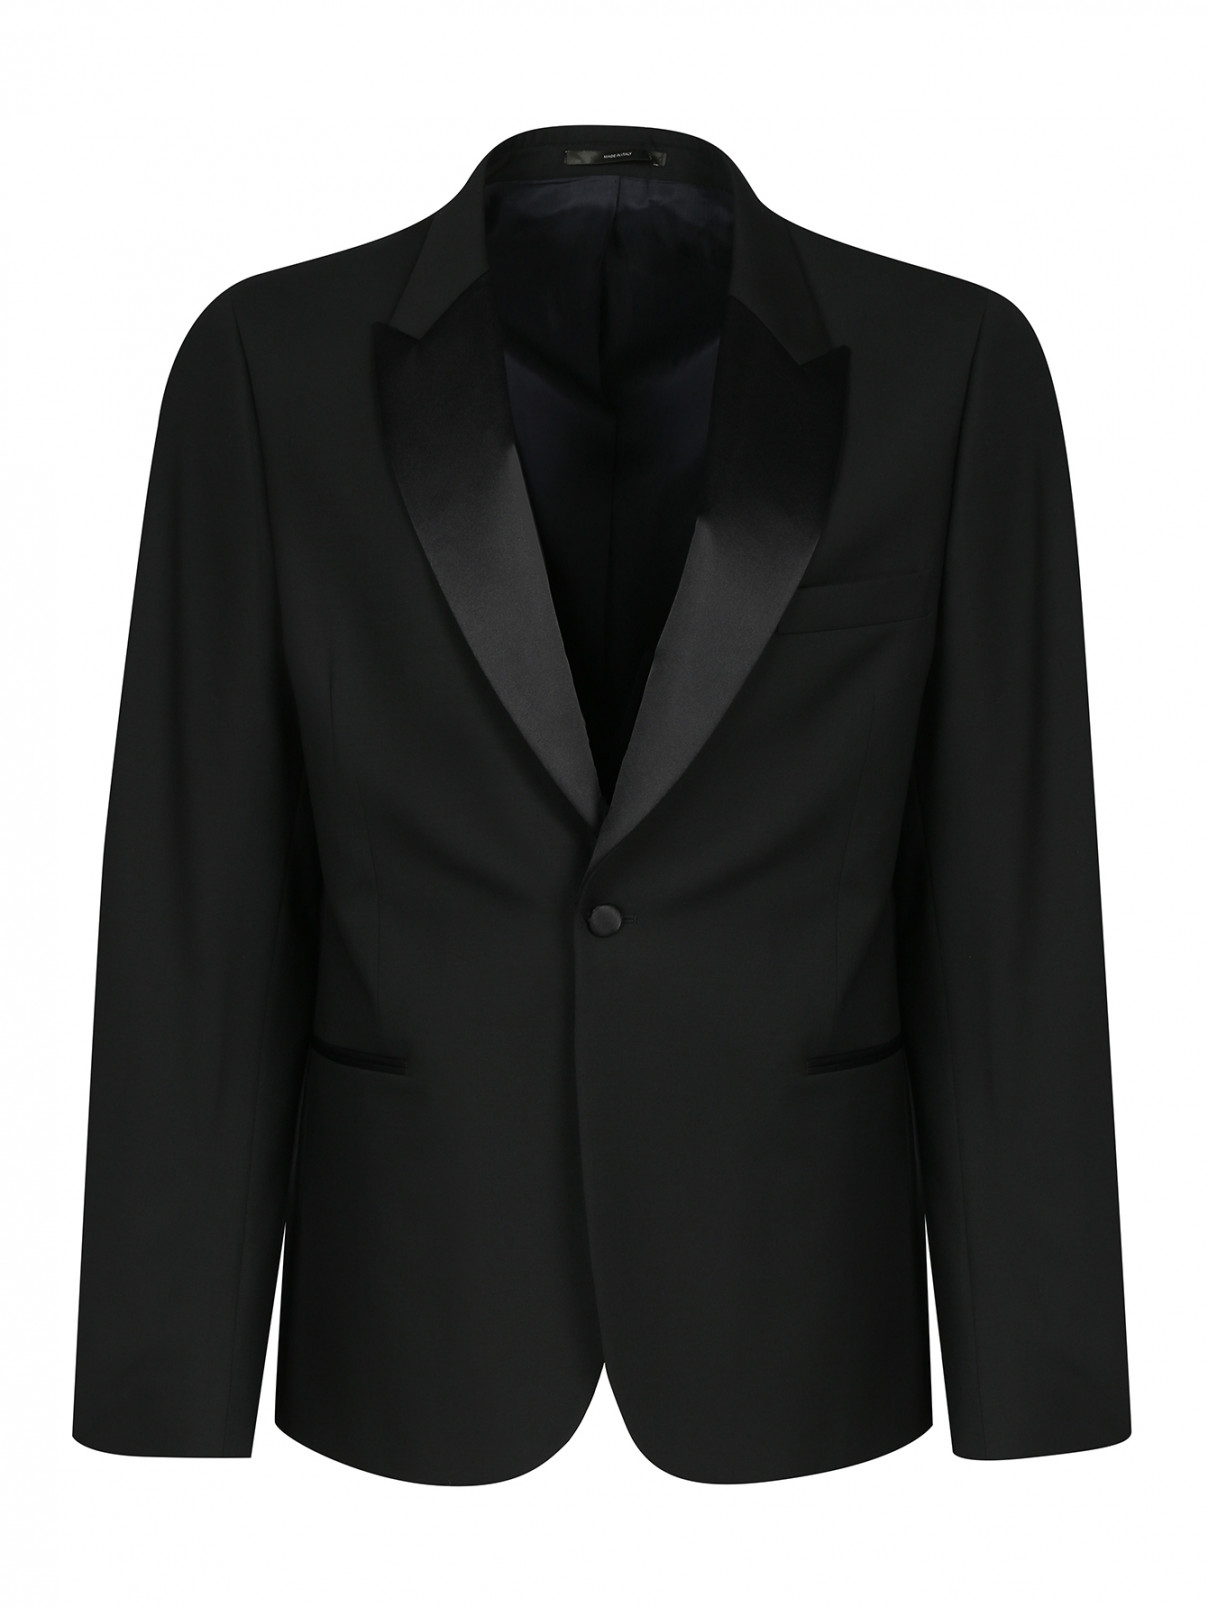 Пиджак однобортный из шерсти Paul Smith  –  Общий вид  – Цвет:  Черный